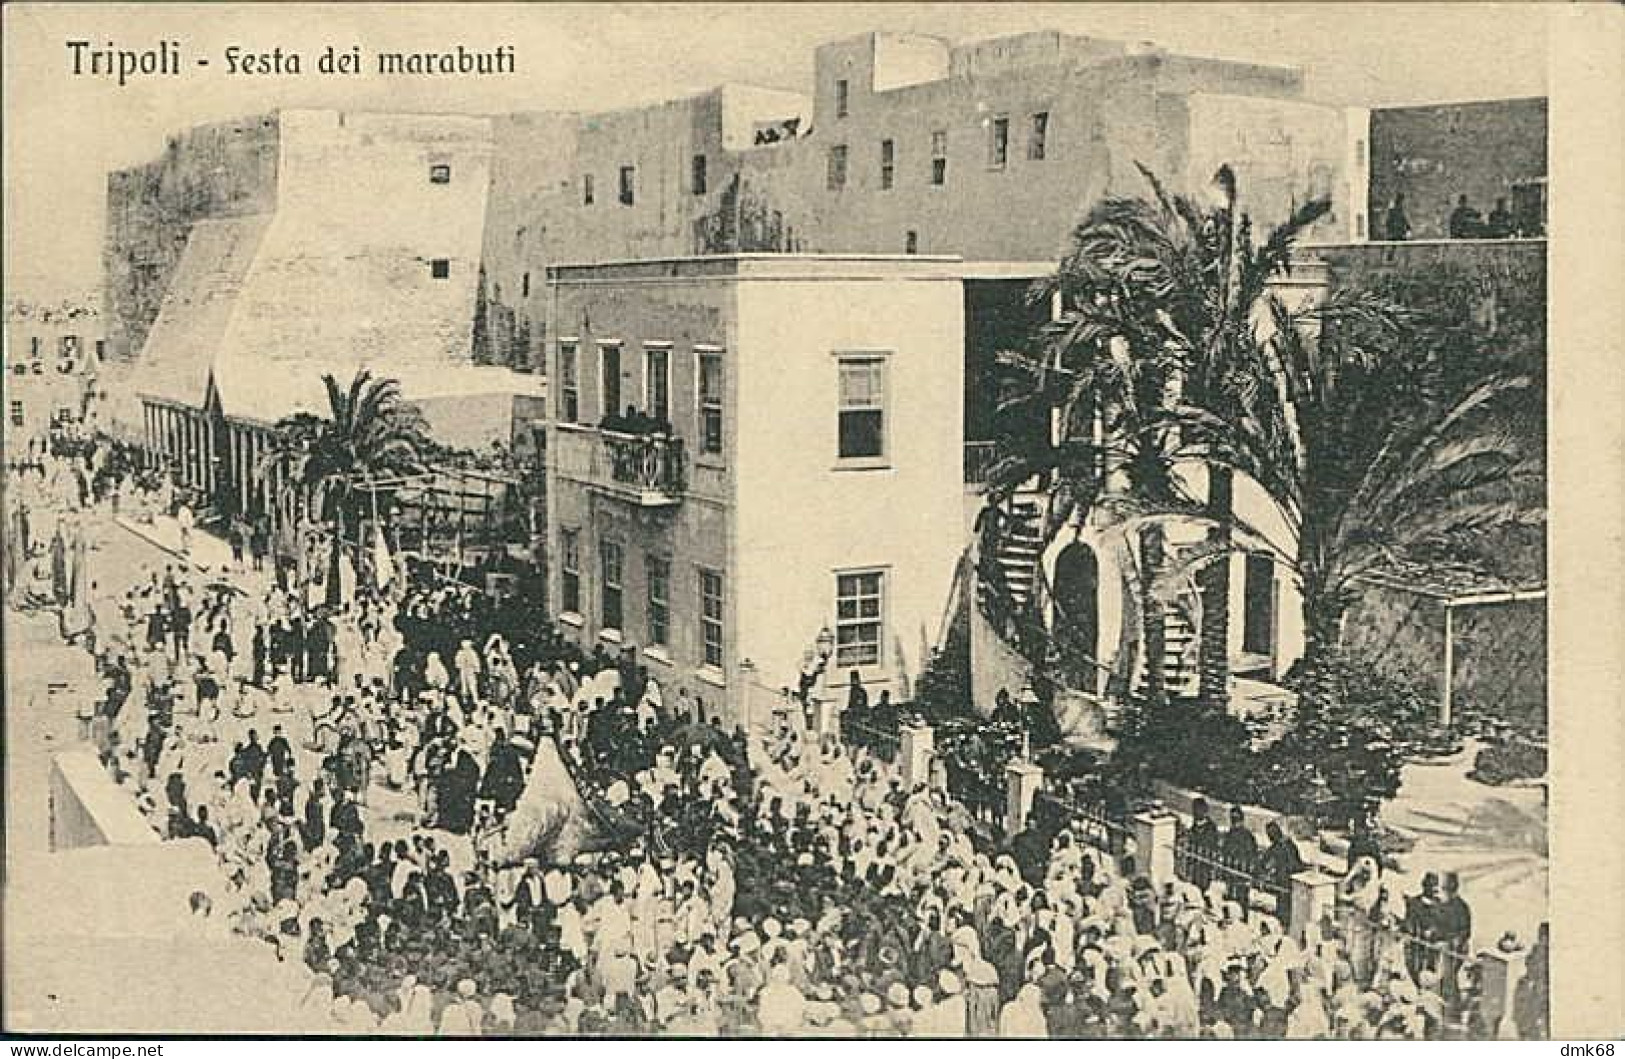 LIBIA / LIBYA - TRIPOLI - FESTA DEI MARABUTI - EDIT TRAMPETTI & MIGLIACCIO - 1910s (12452) - Libia